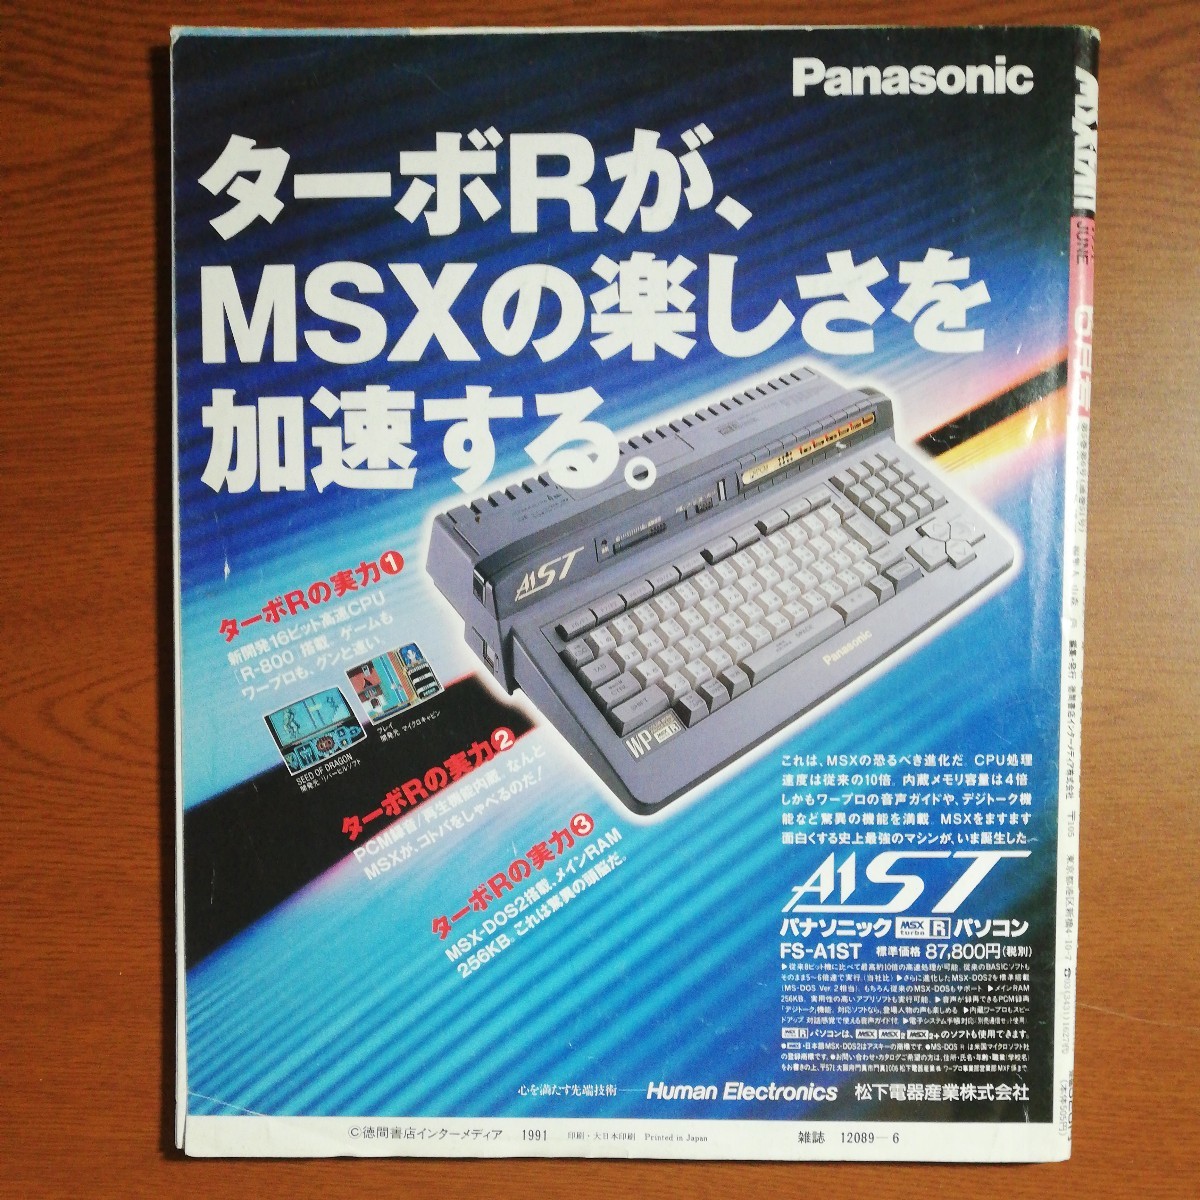 [ бесплатная доставка ] MSX*FAN 1991 год 6 месяц номер l доверие длина. ..*.. способ . запись,... решение ., др. 